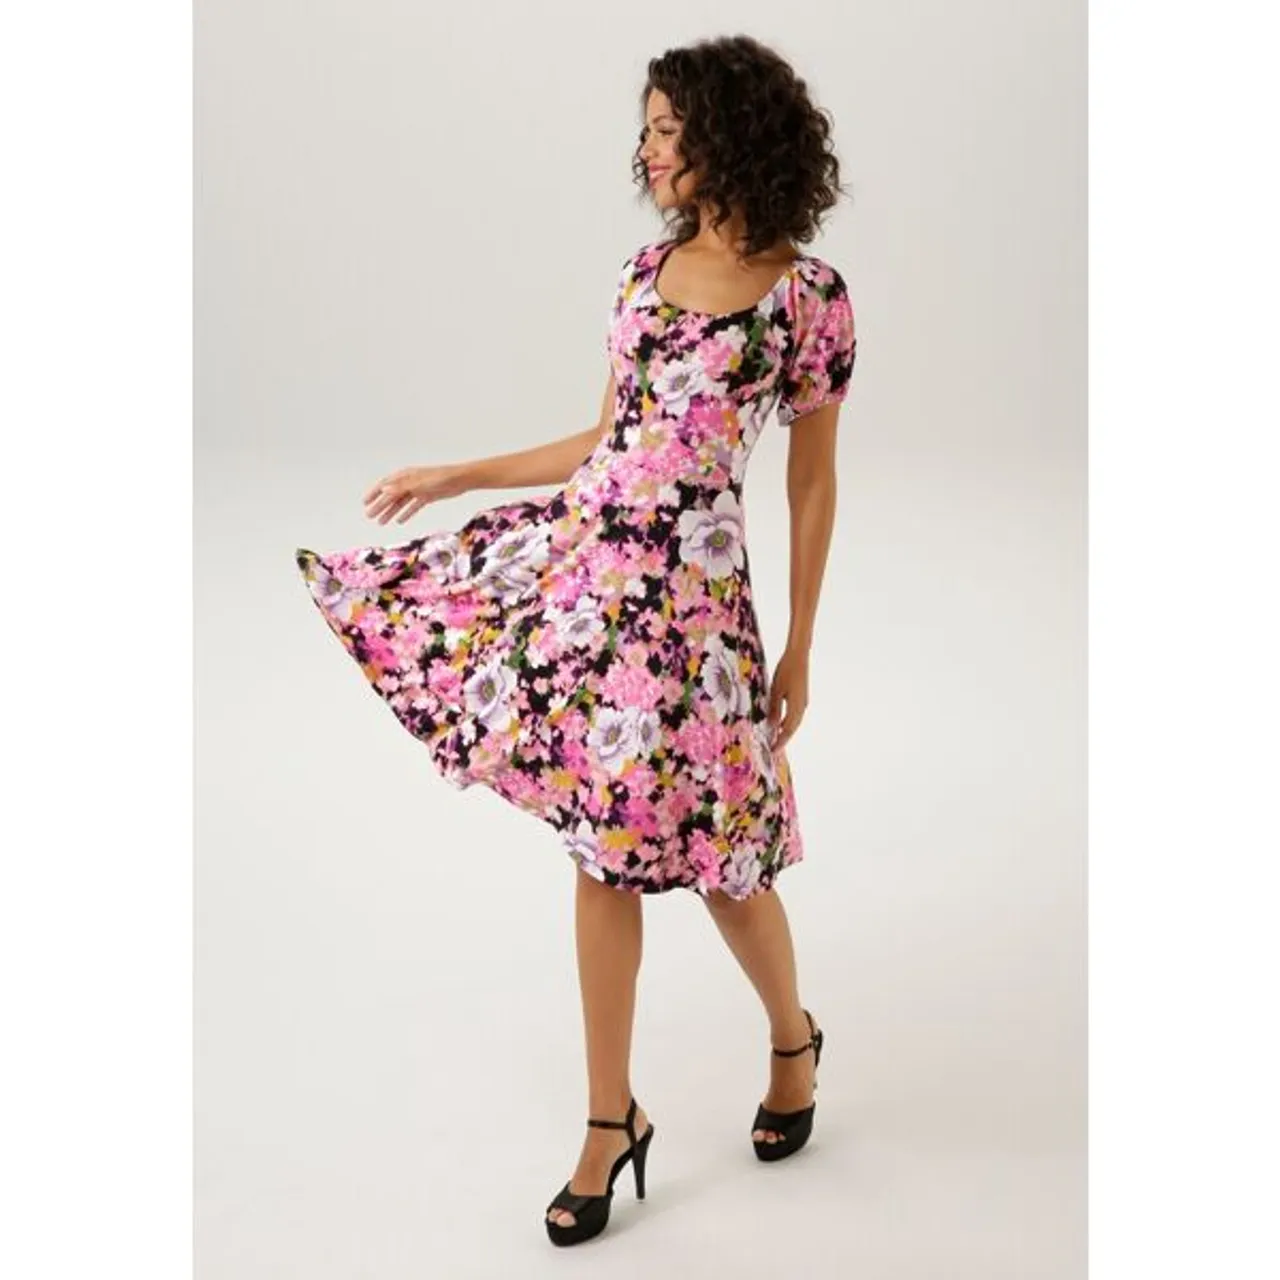 Sommerkleid ANISTON CASUAL Gr. 44, N-Gr, bunt (pink, schwarz, rosa, apfelgrün, weiß, flieder, lila, grün) Damen Kleider Shirtkleider Bestseller